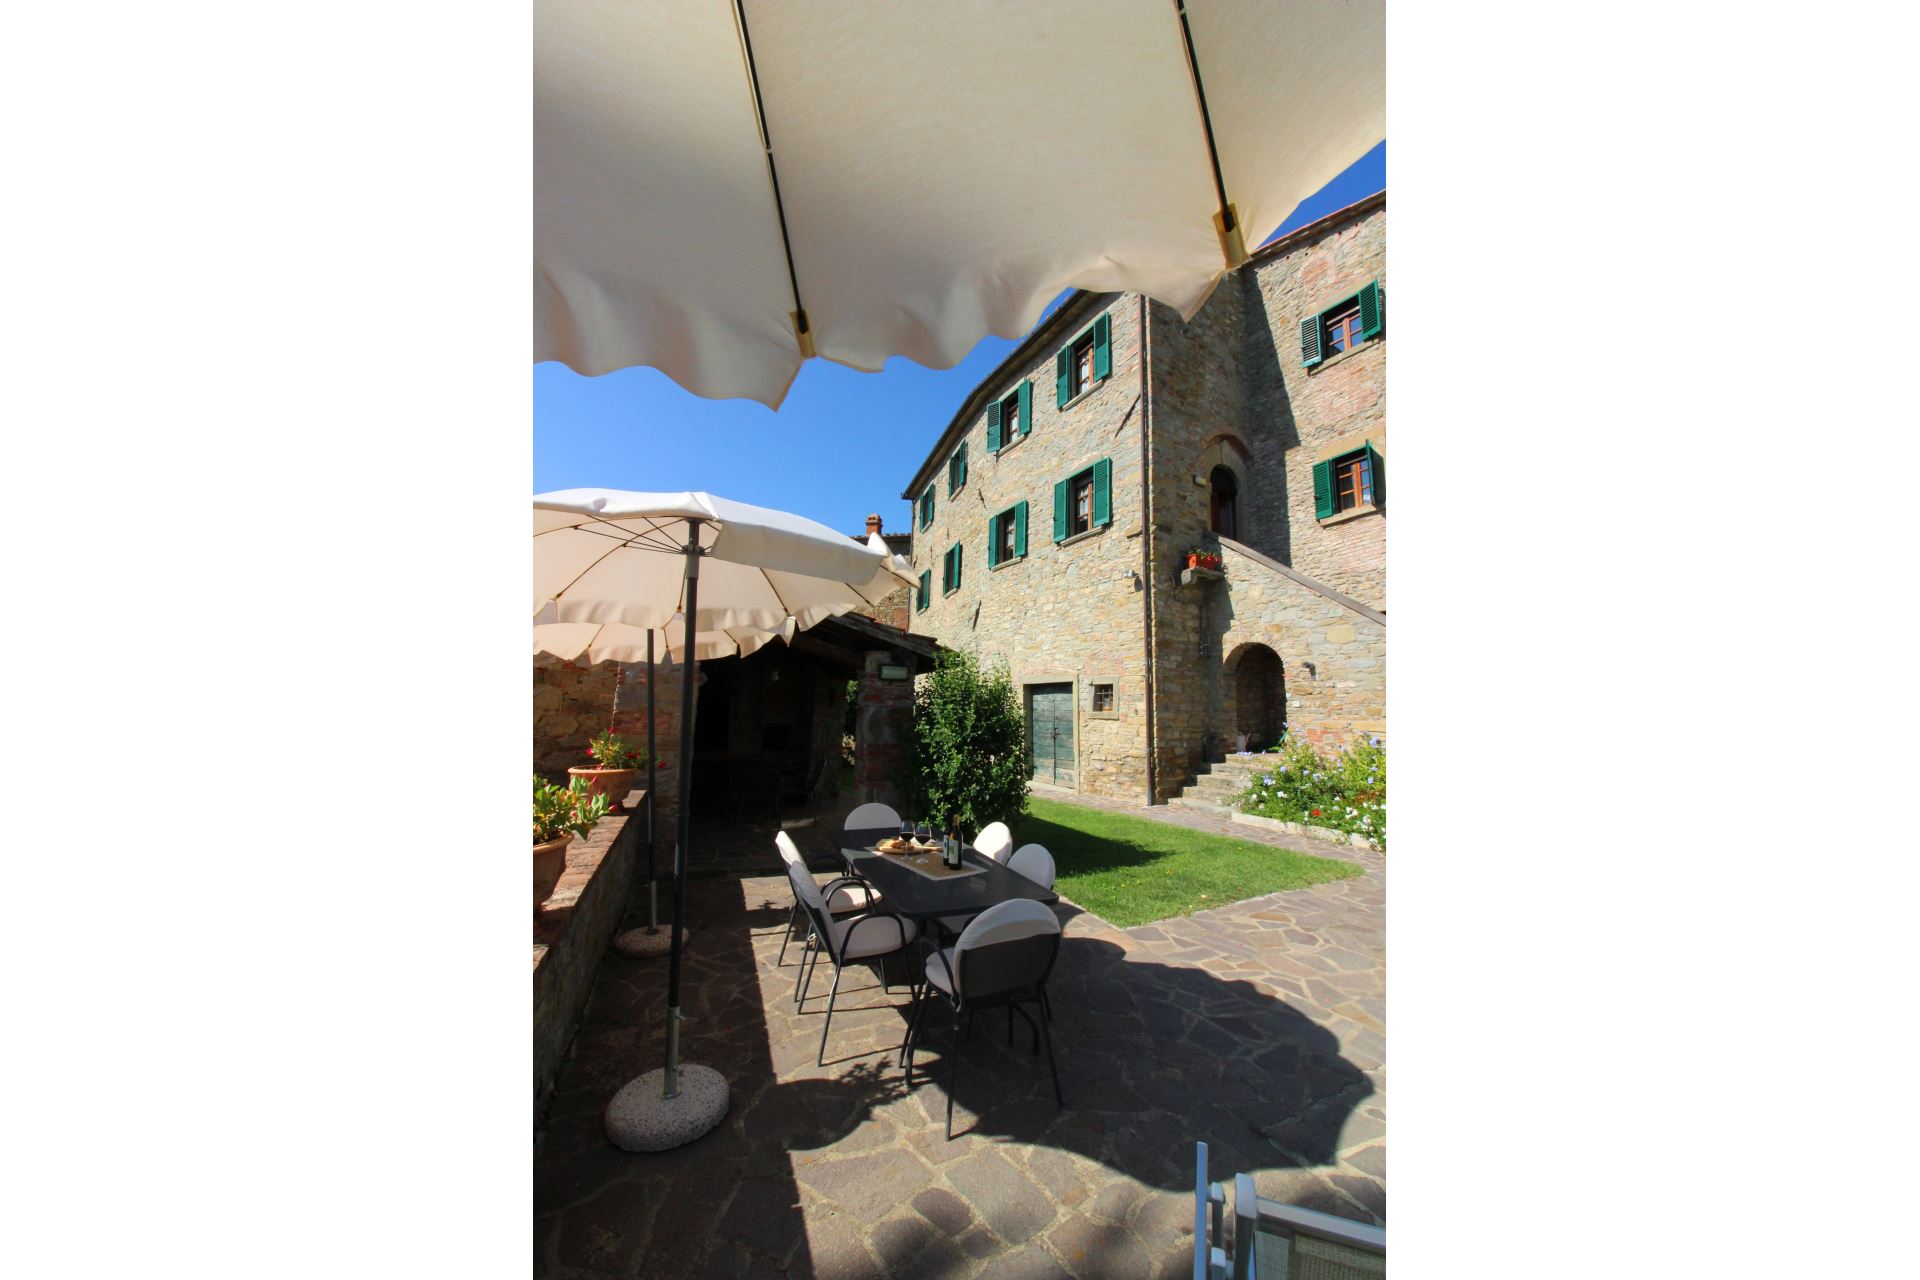 434_79ccd96_Kindvriendelijk vakantiehuis met privé zwembad, Borgo Caprile, Toscane, Cortona, Arezzo, (39).